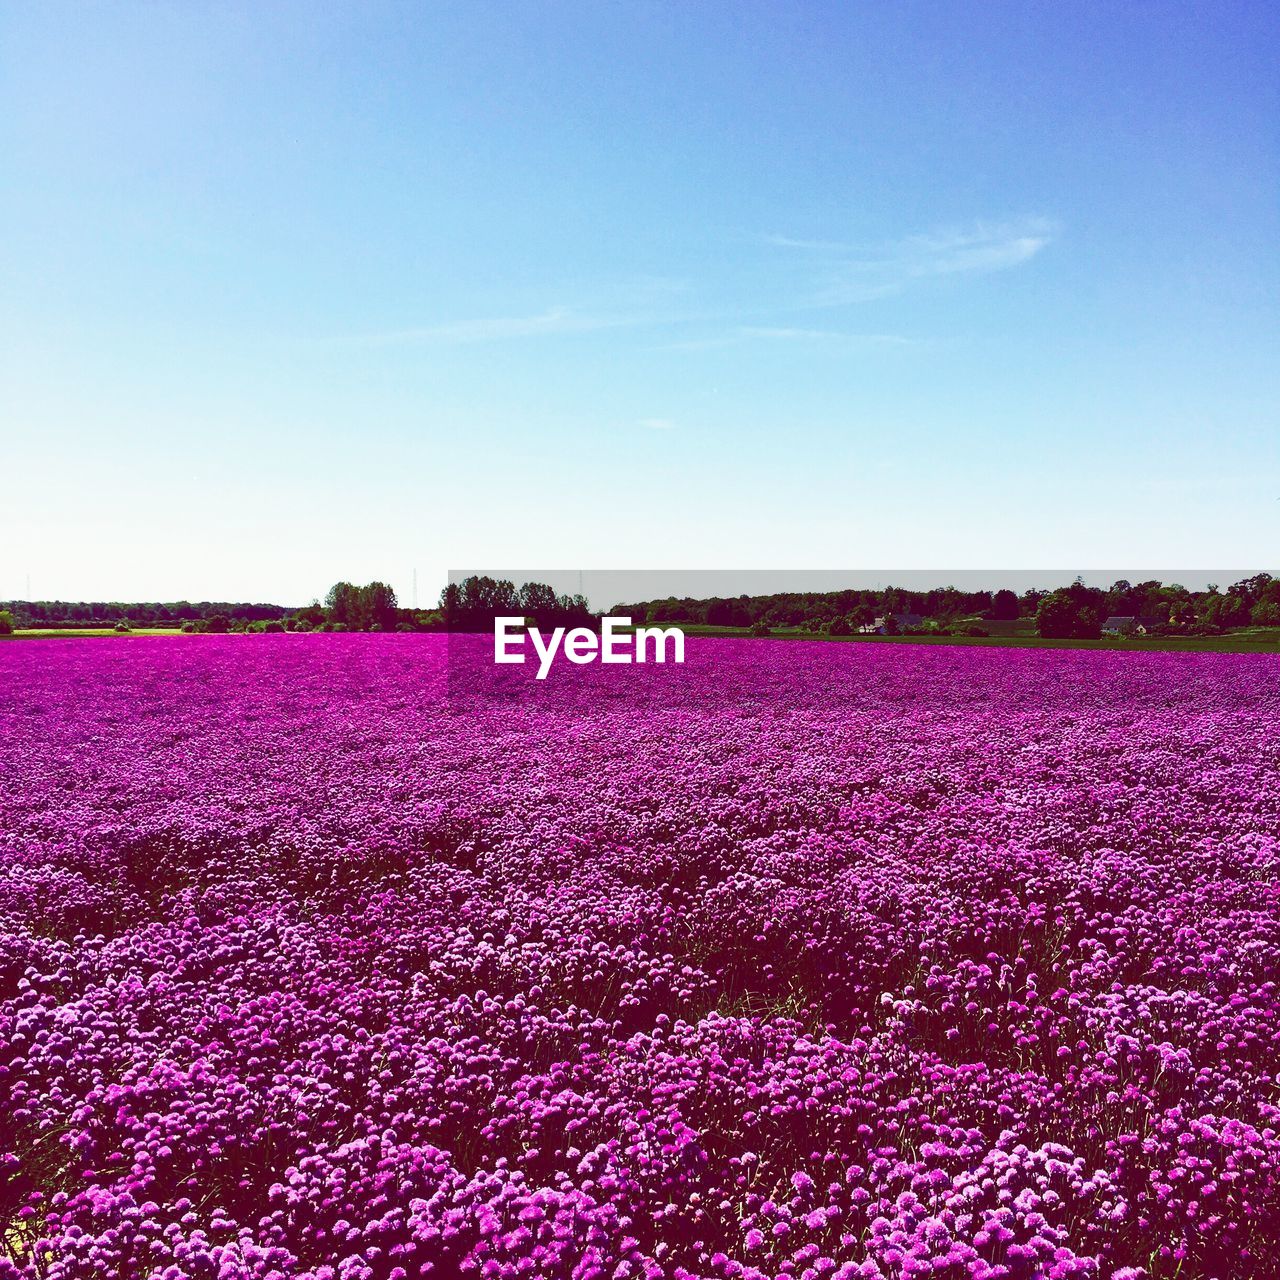 Pink flowers blooming in field